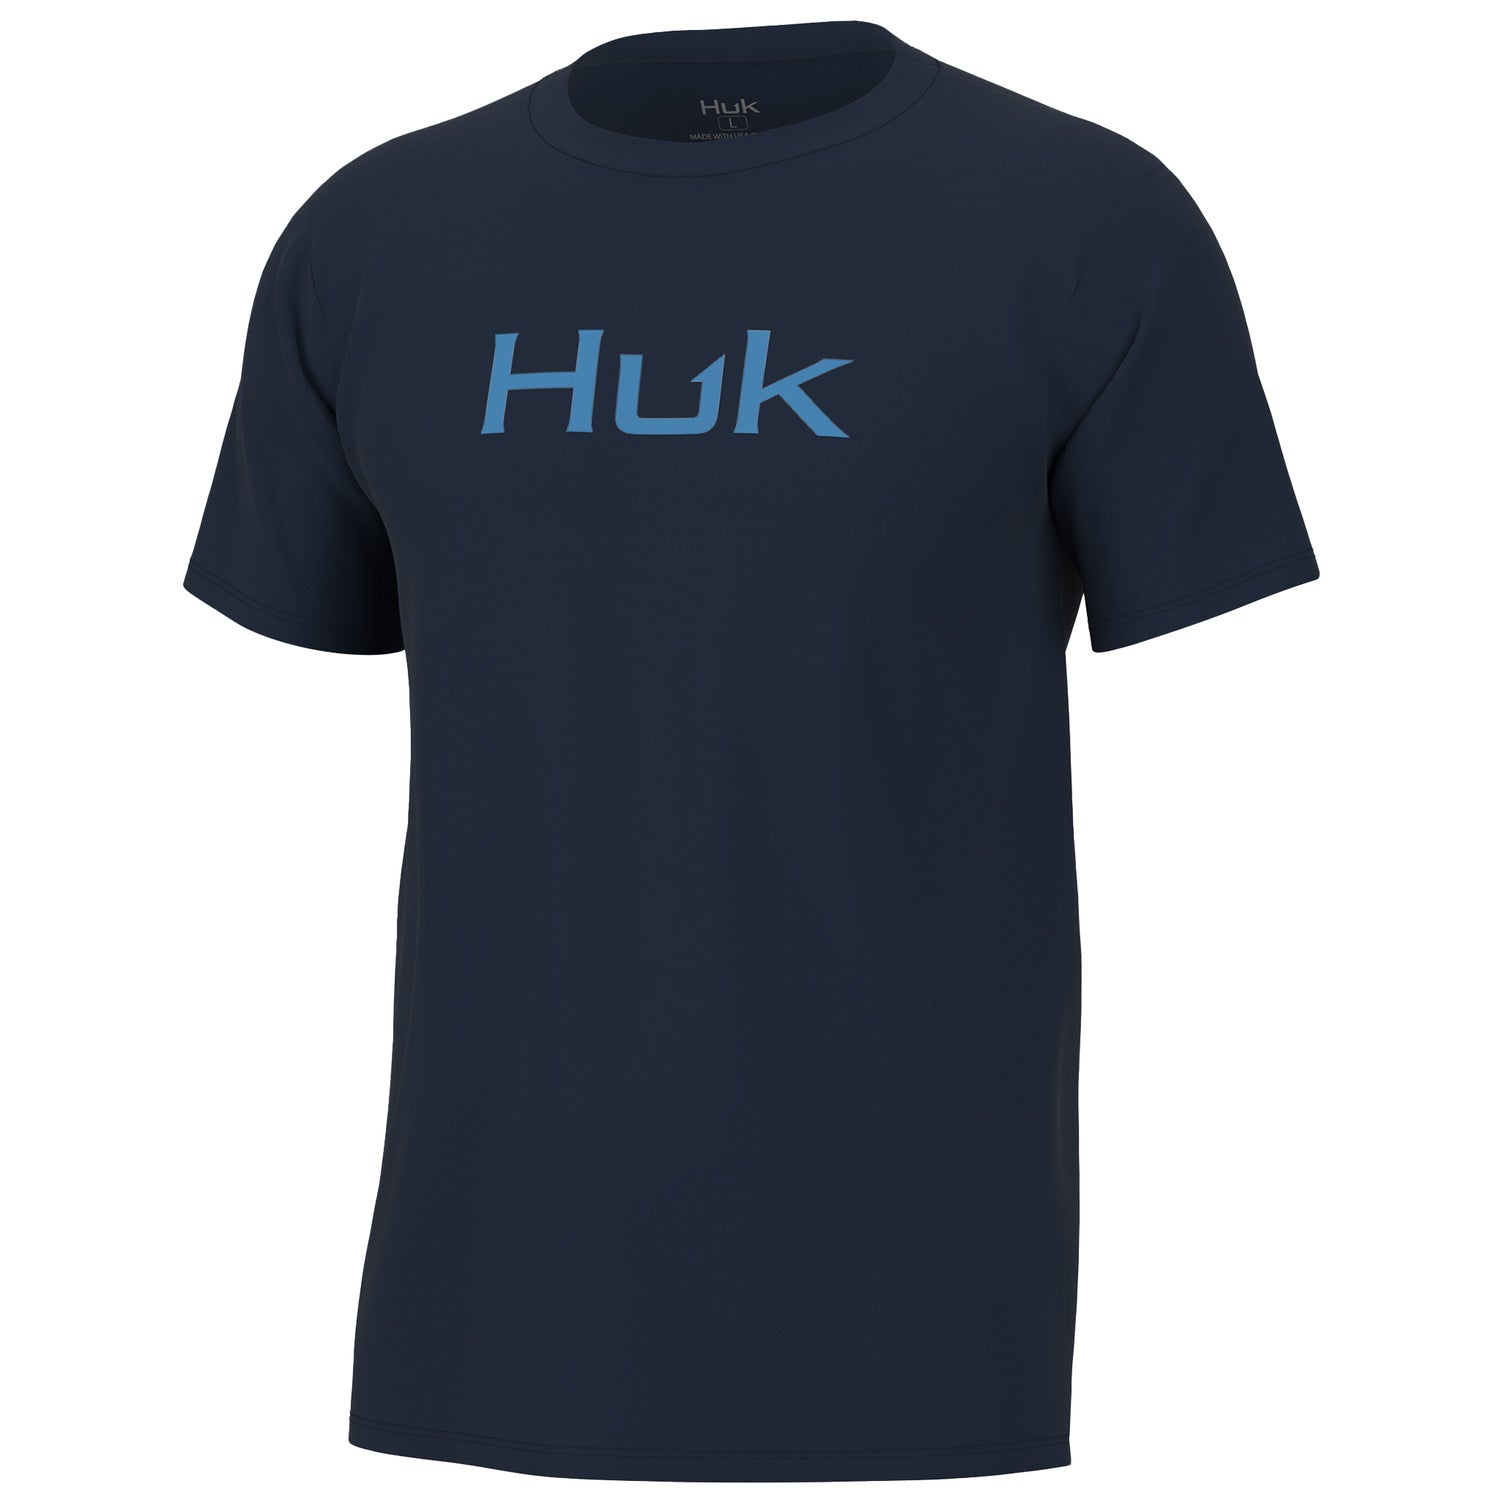 'Huk' Men's Logo Tee - Set Sail